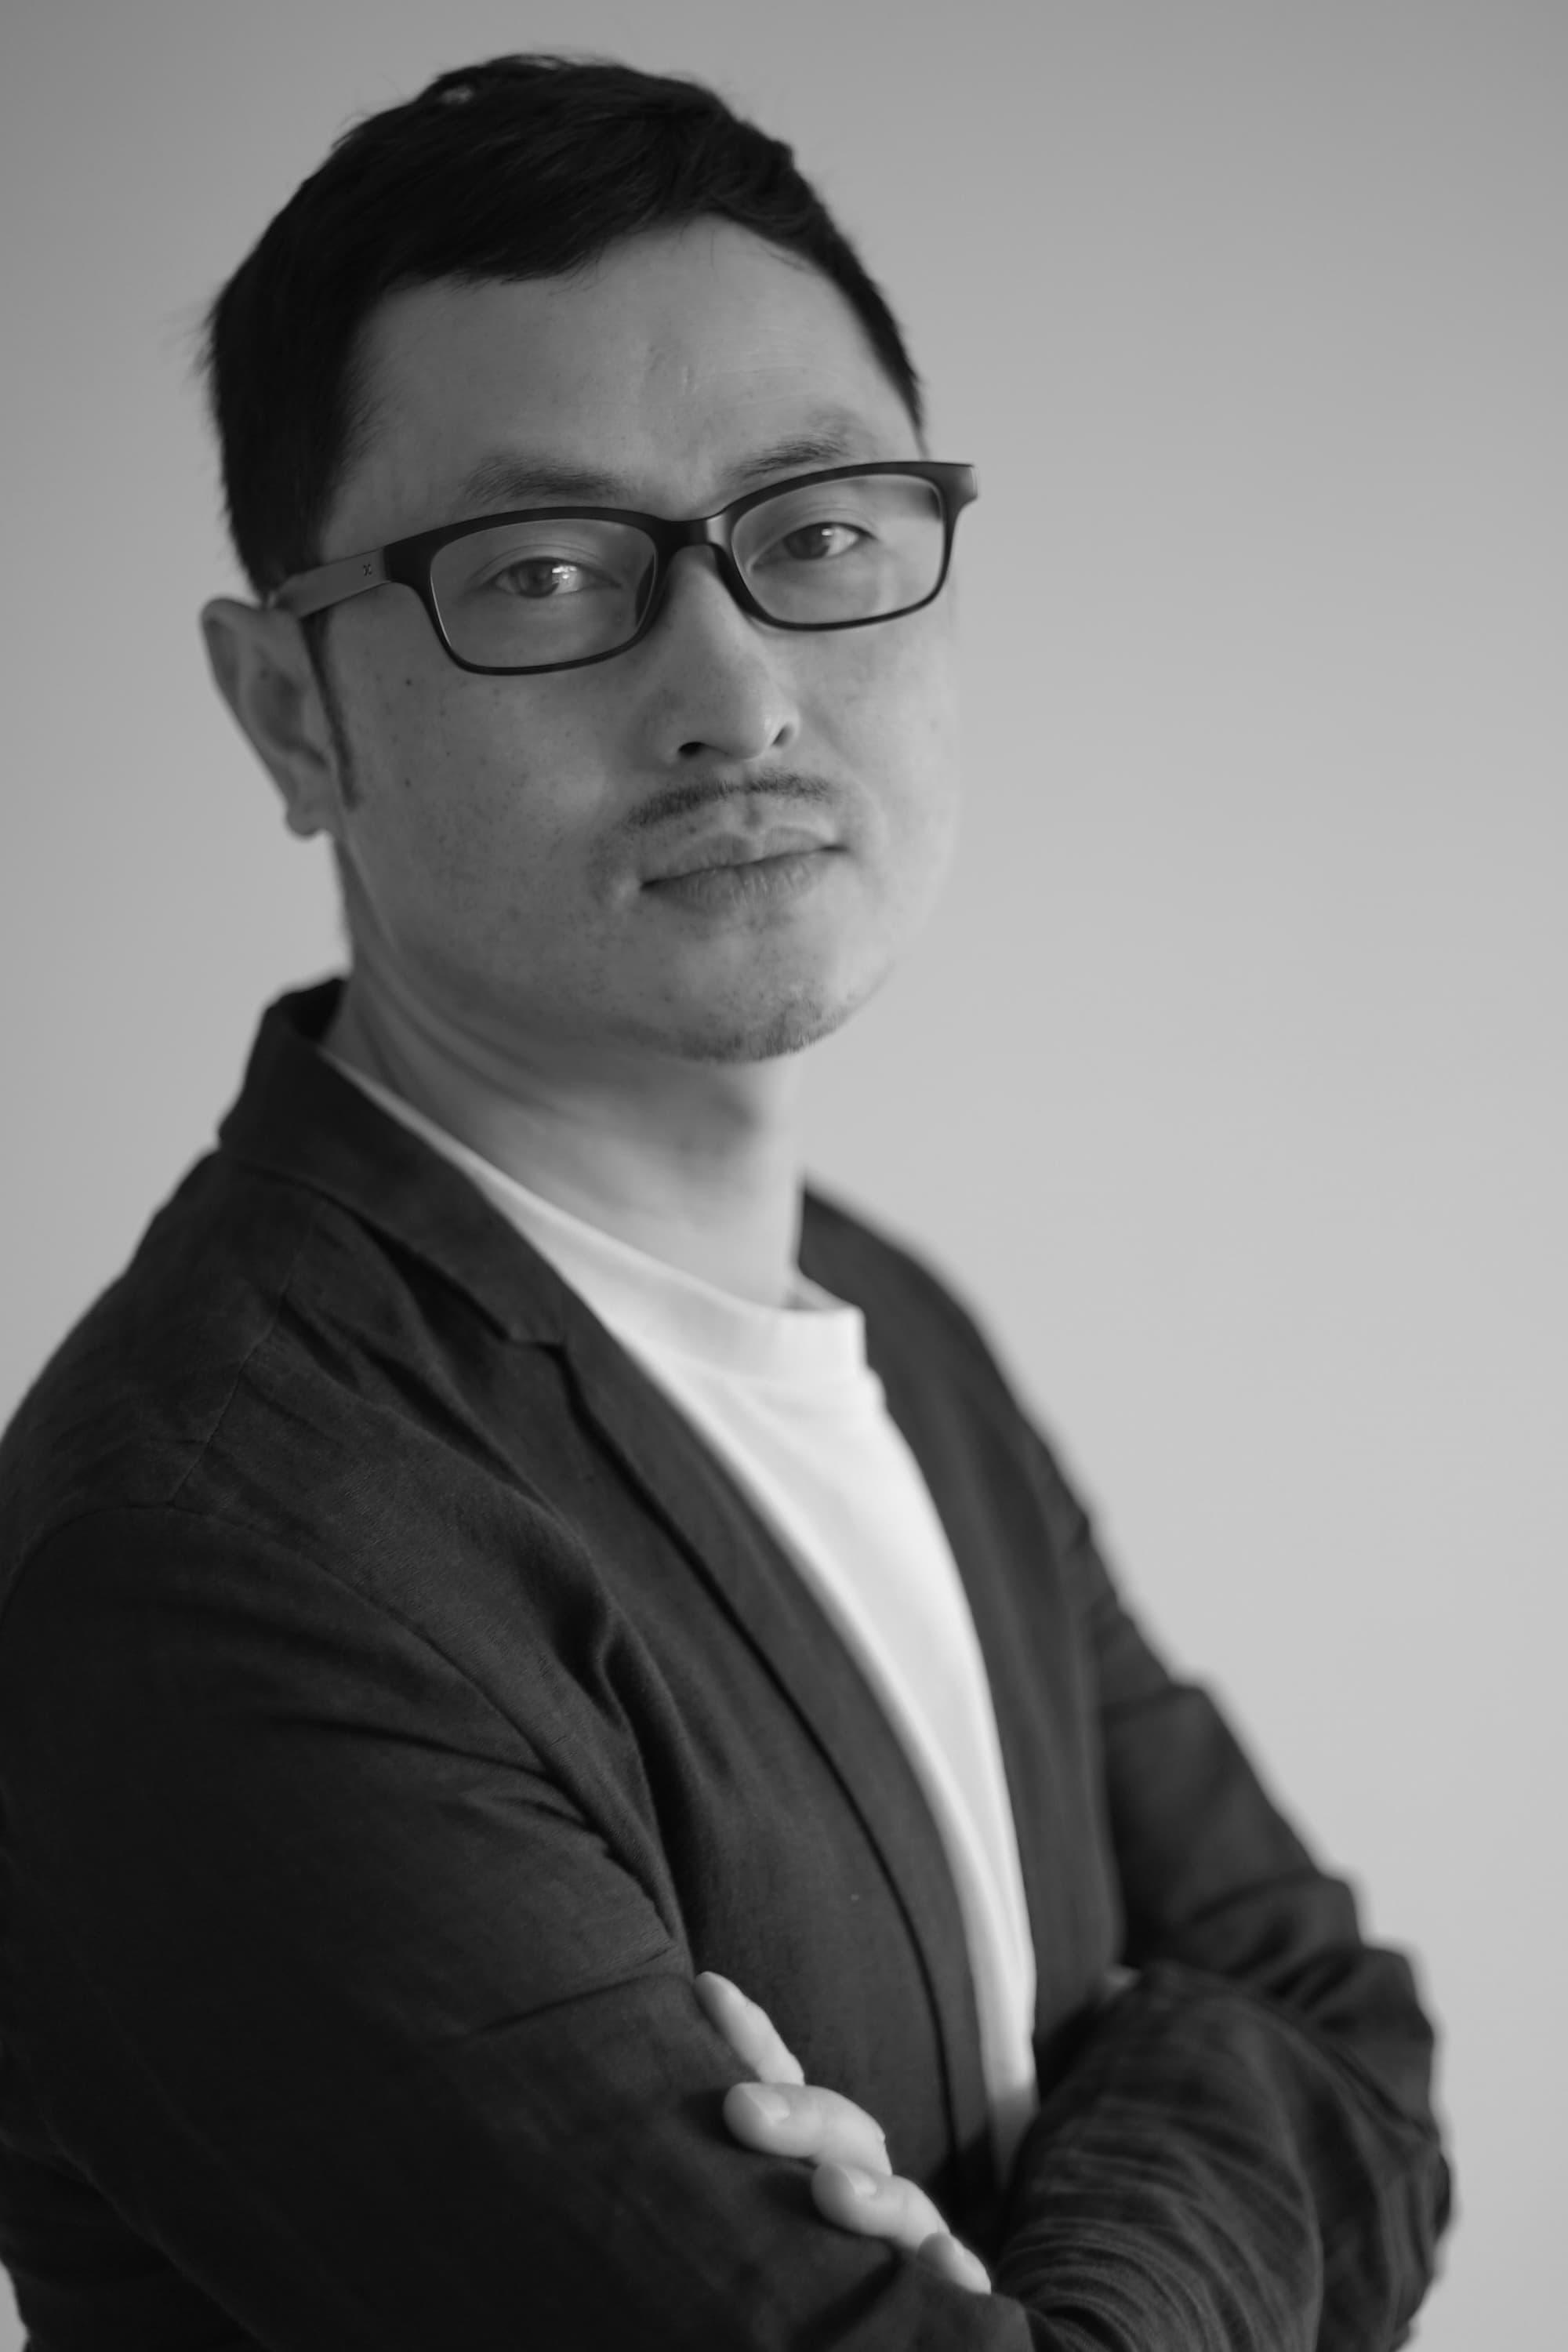 Xu Wei | Director of Photography